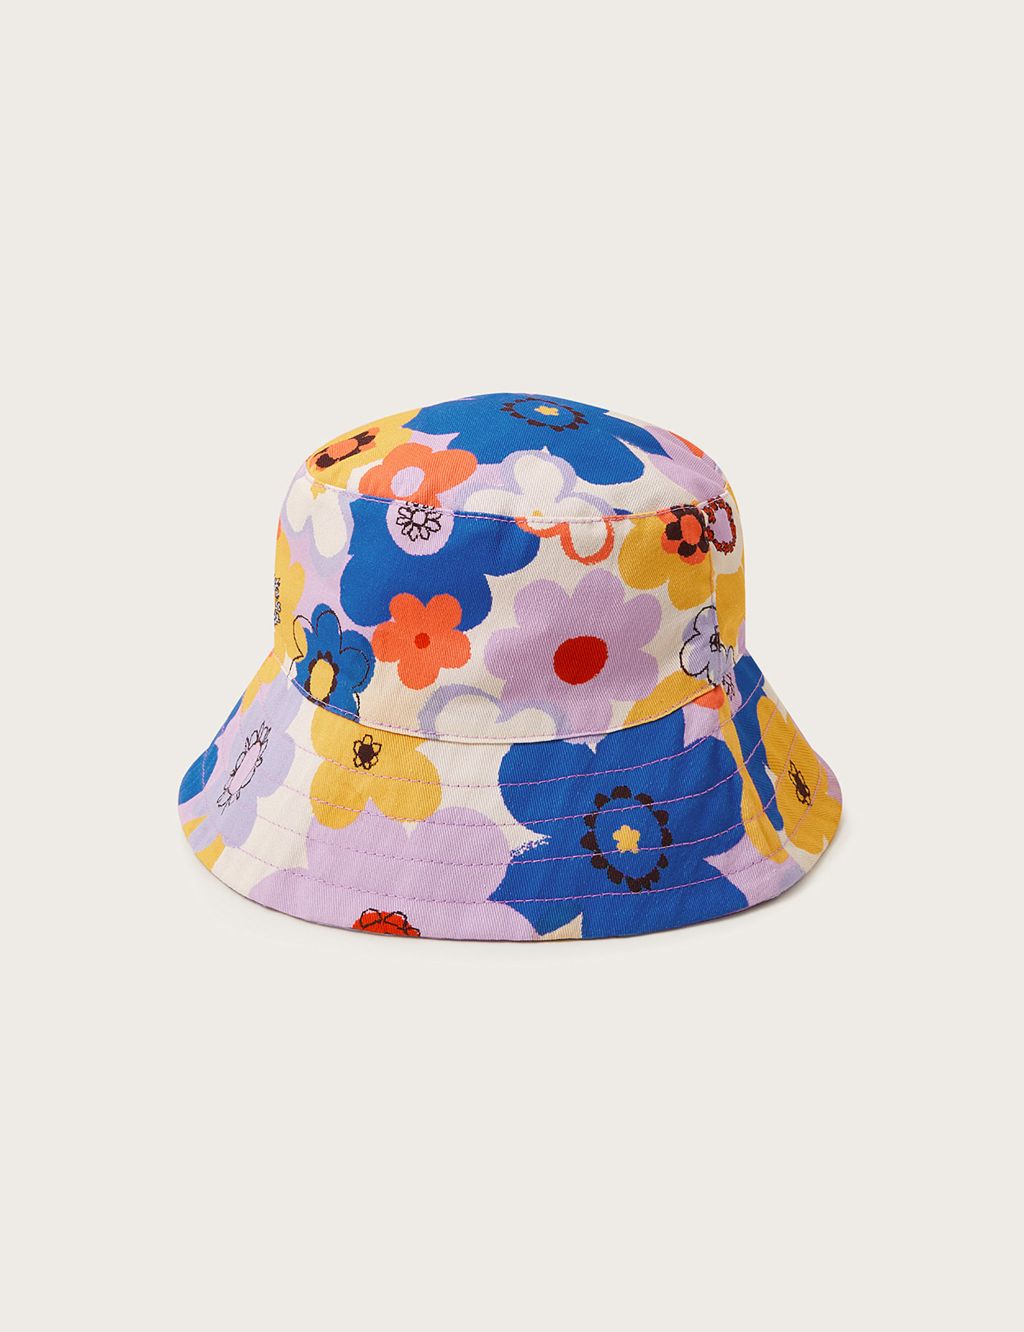 Kids' Pure Cotton Reversible Floral Sun Hat